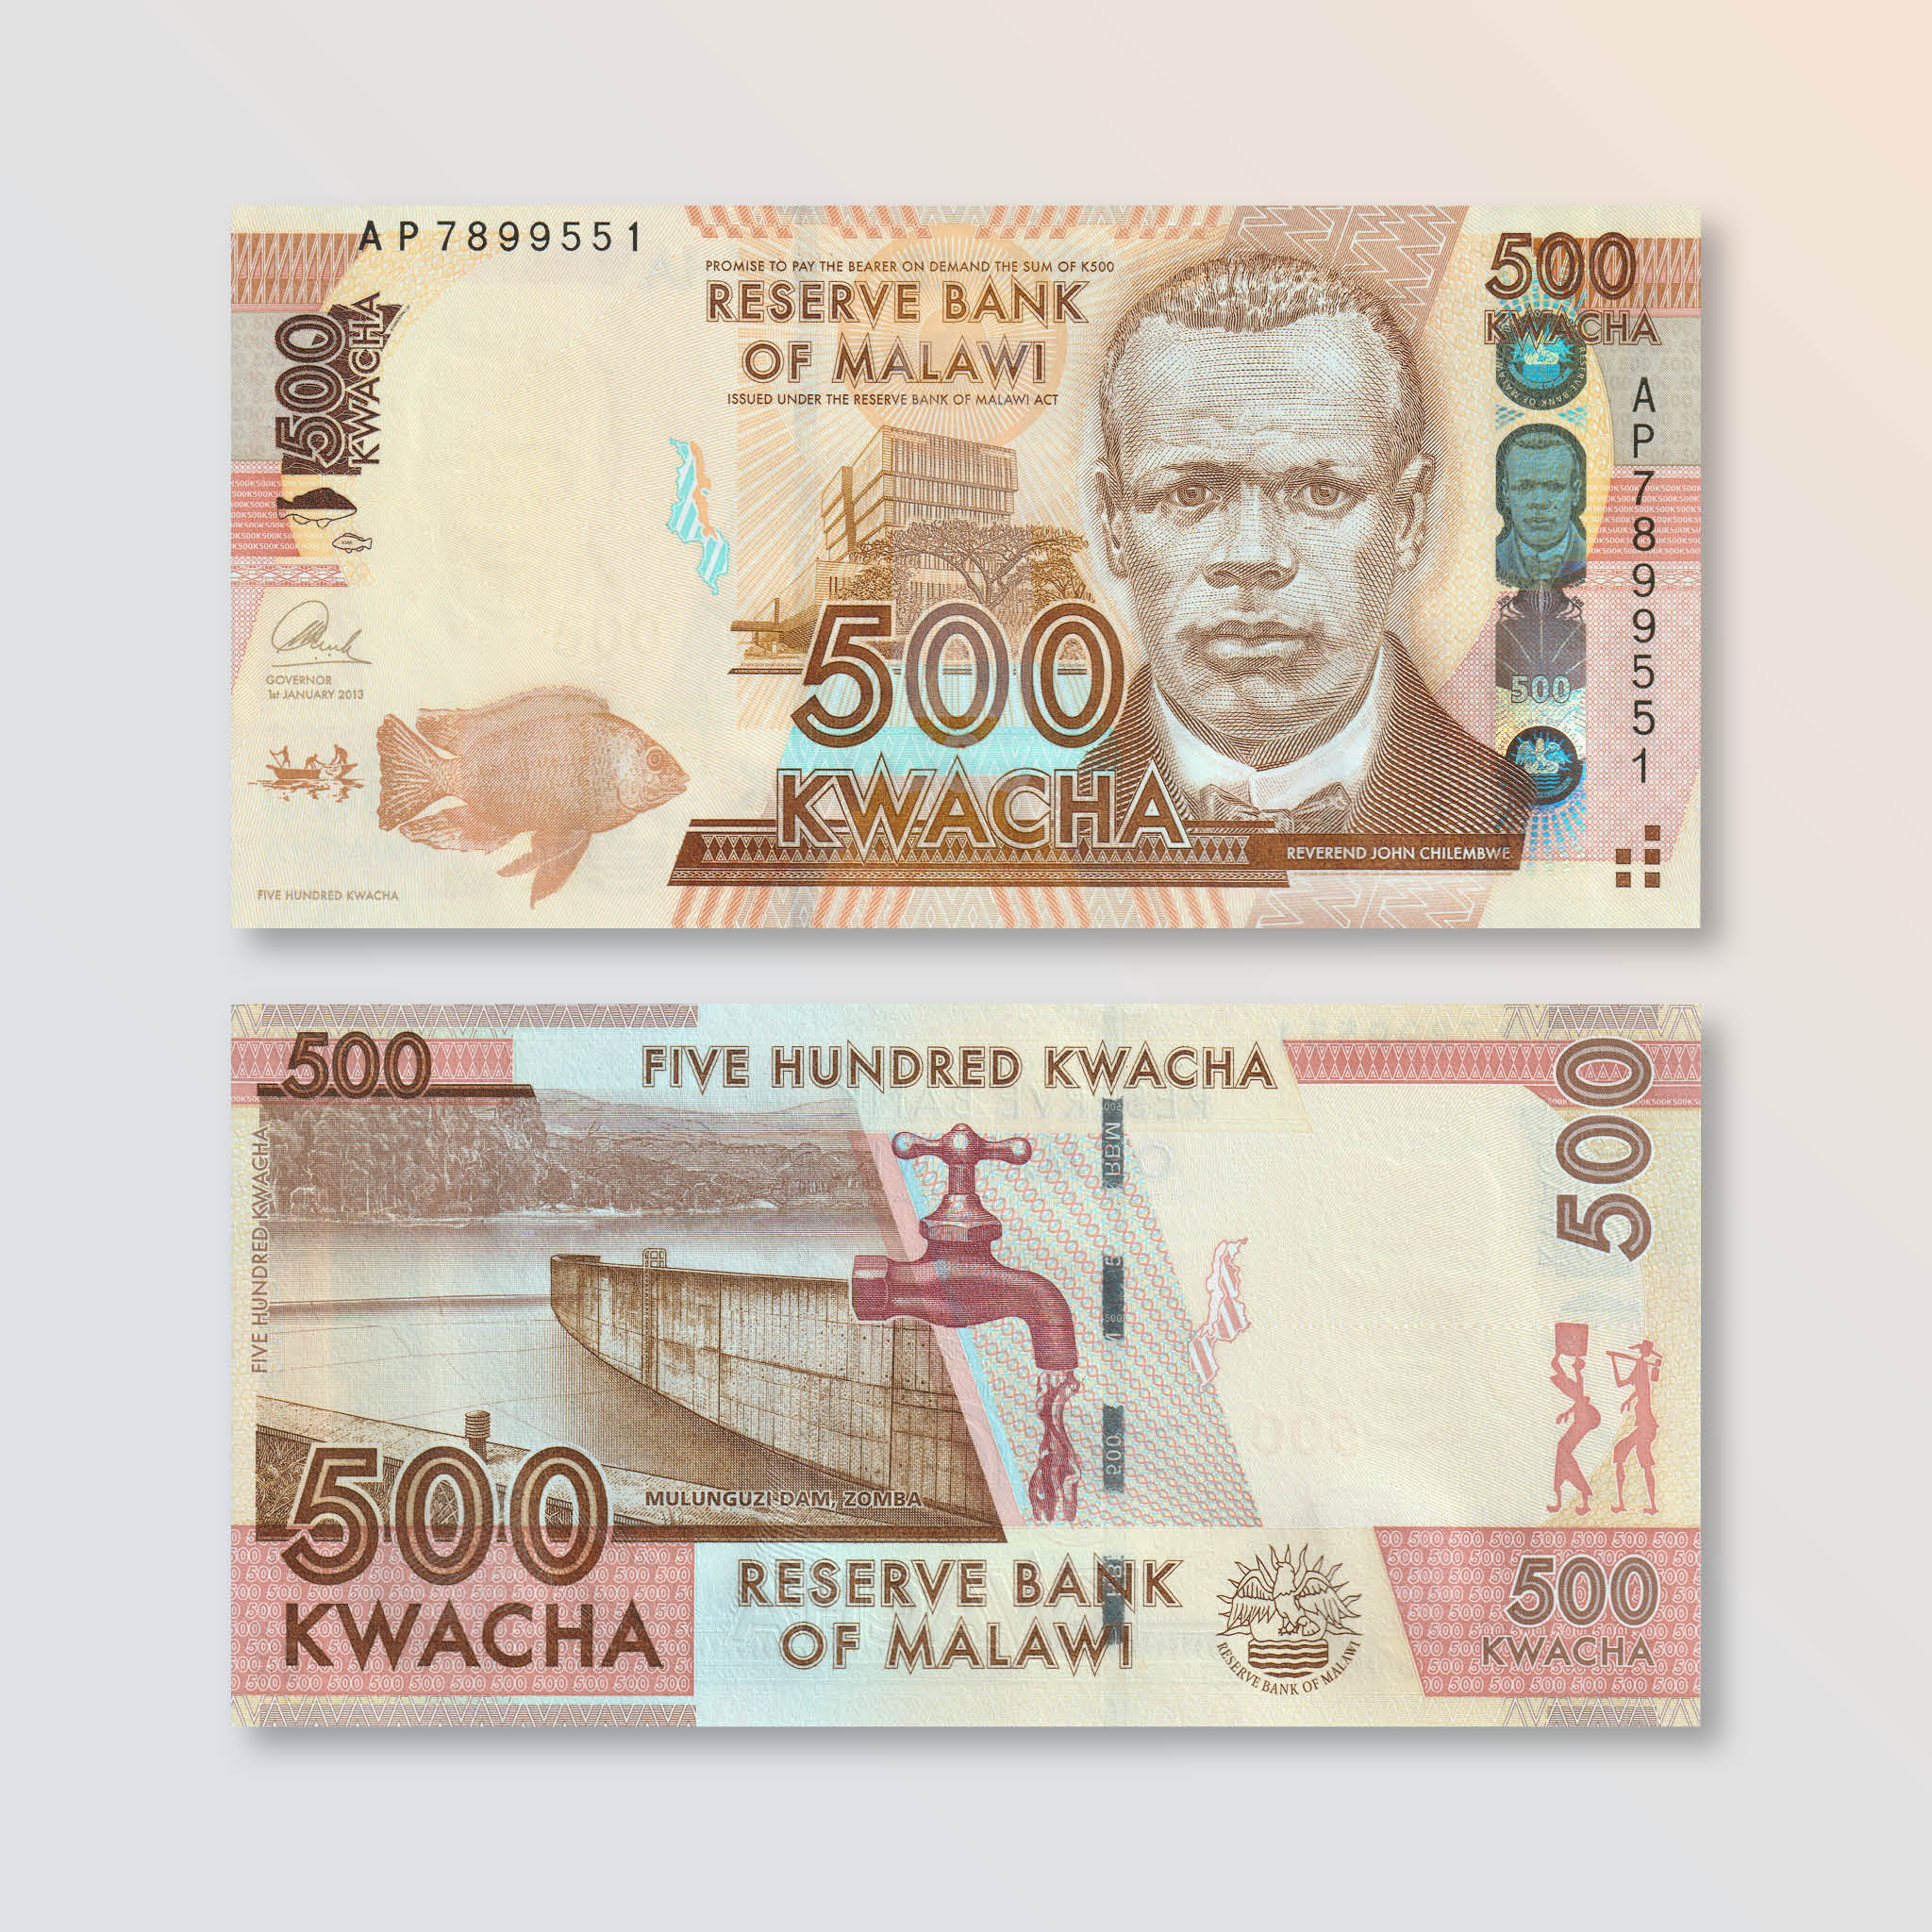 Malawi 500 Kwacha, 2013, B154b, P61b, UNC - Robert's World Money - World Banknotes